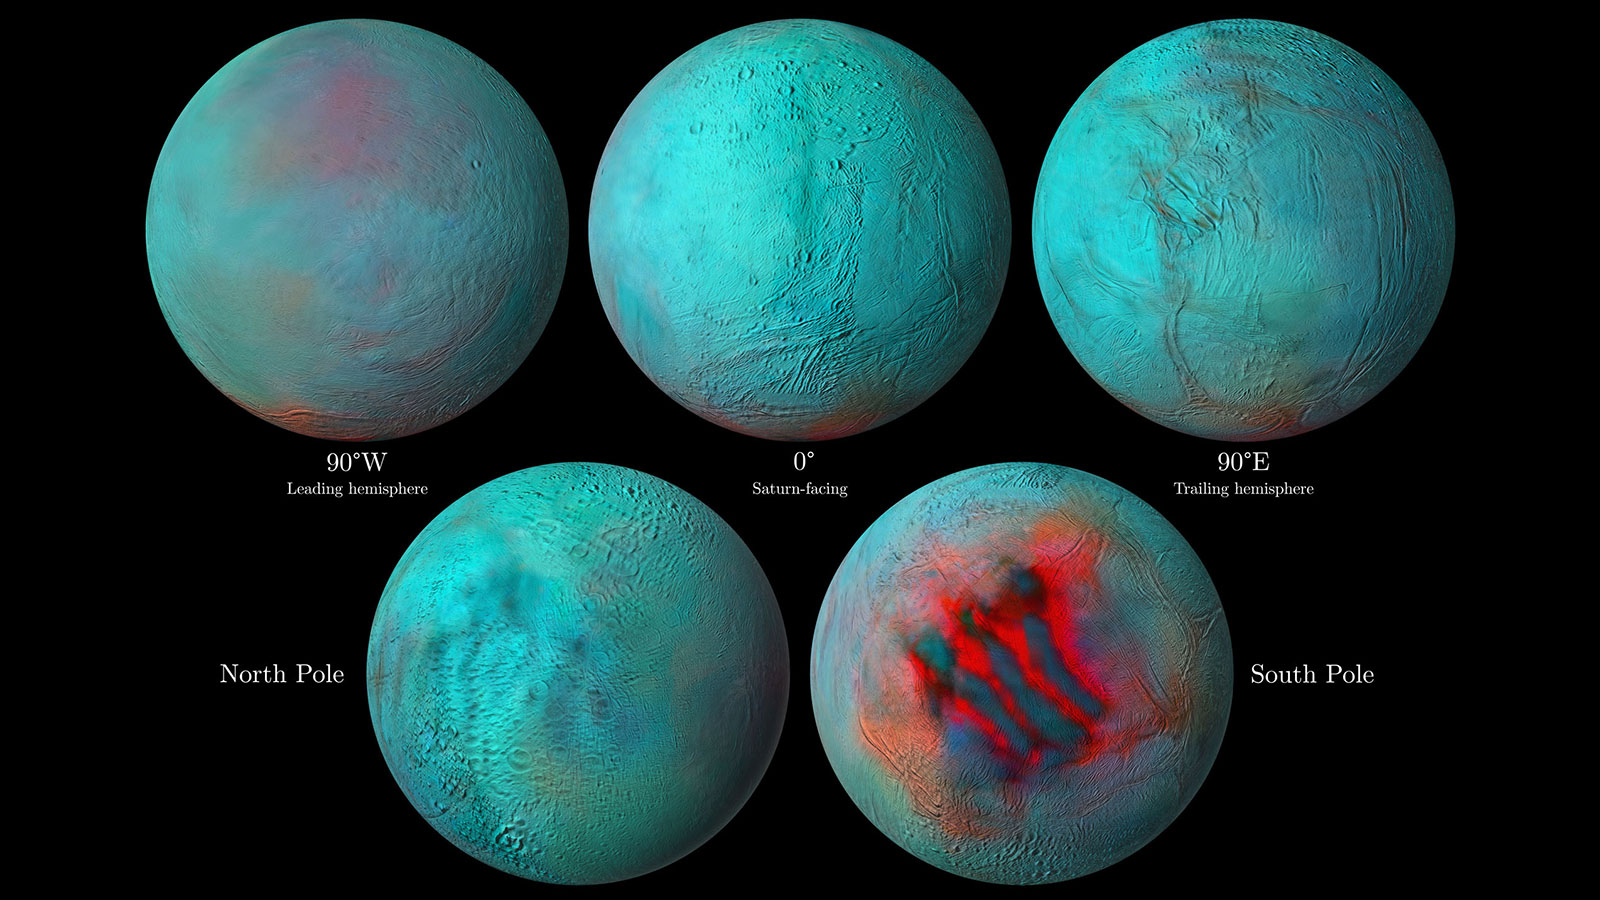 土星の月エンケラドゥスの北半球に「新鮮な氷」があると判明。地質学的な活動が続いている可能性ありの画像 1/2